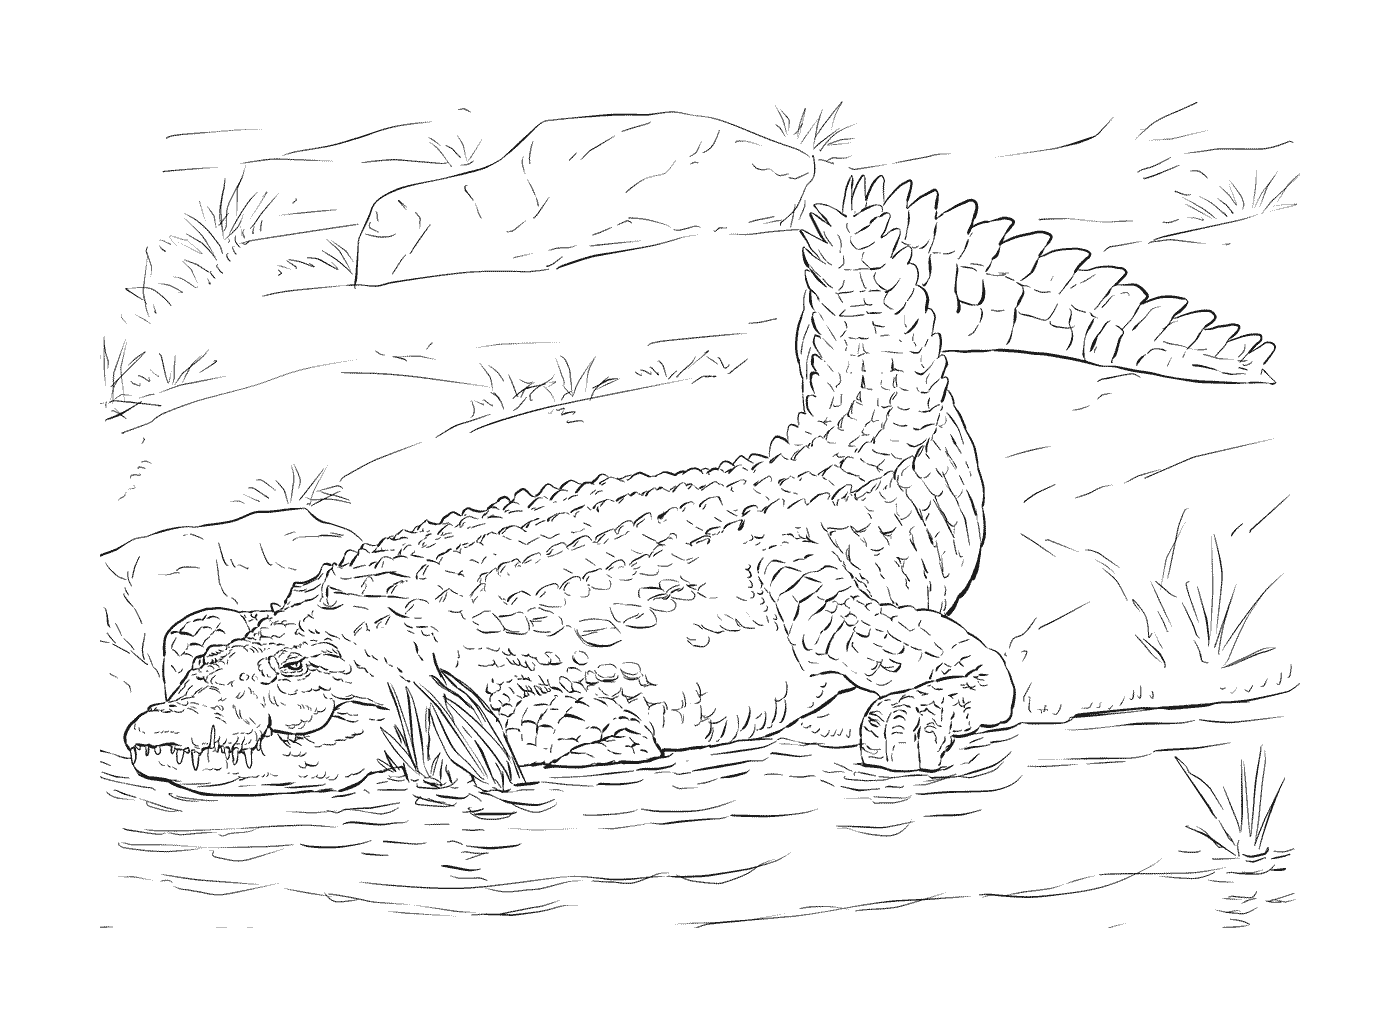  Um adulto do crocodilo do Nilo em seu habitat natural 